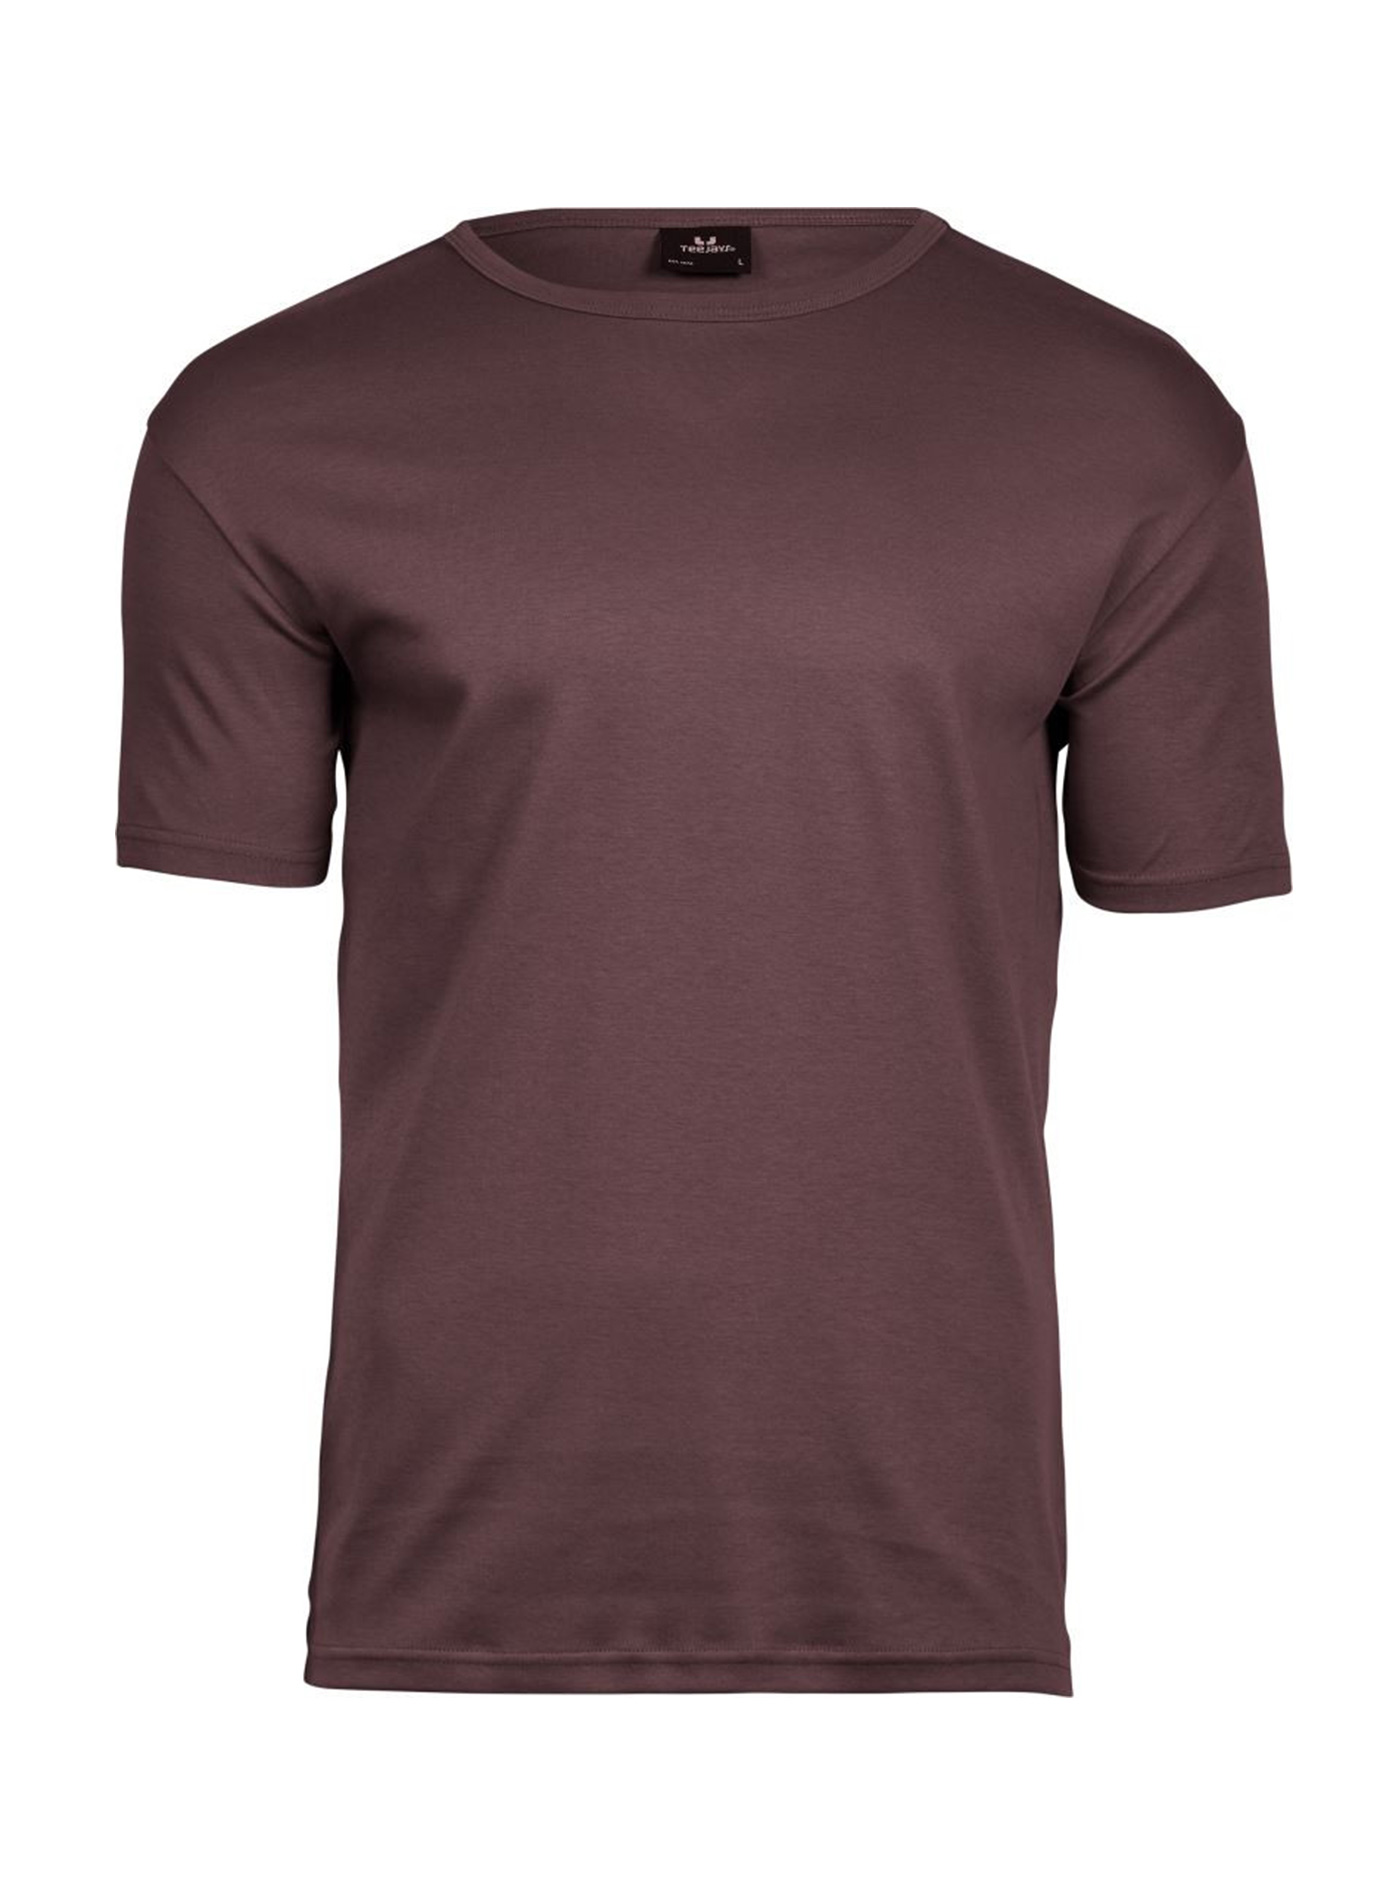 Silné bavlněné tričko Tee Jays Interlock - Hnědočervená XXL